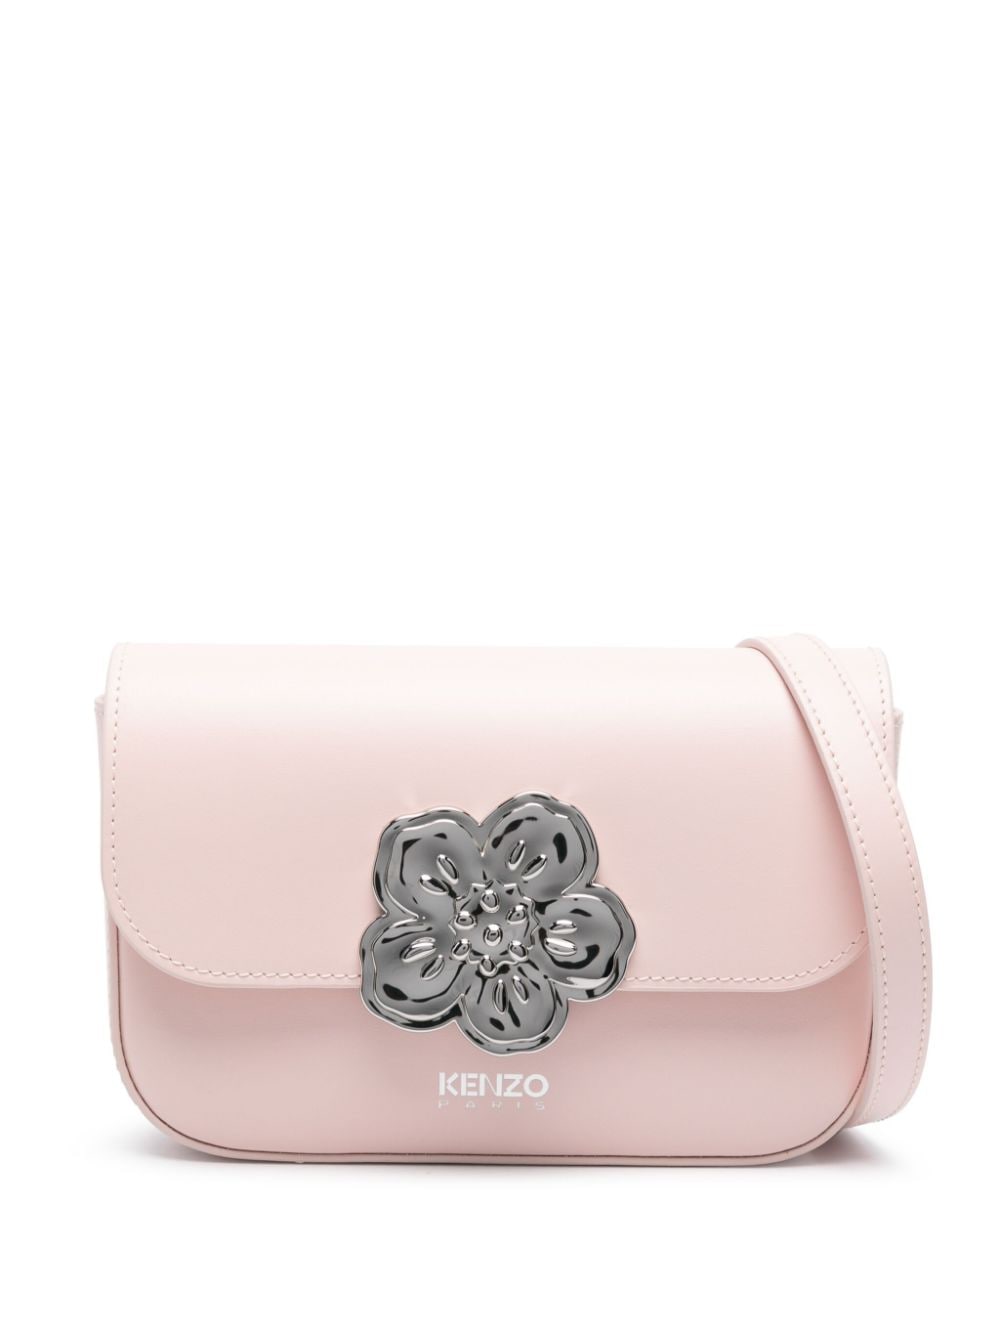 Kenzo Kenzo Boke leather crossbody bag - Pink von Kenzo